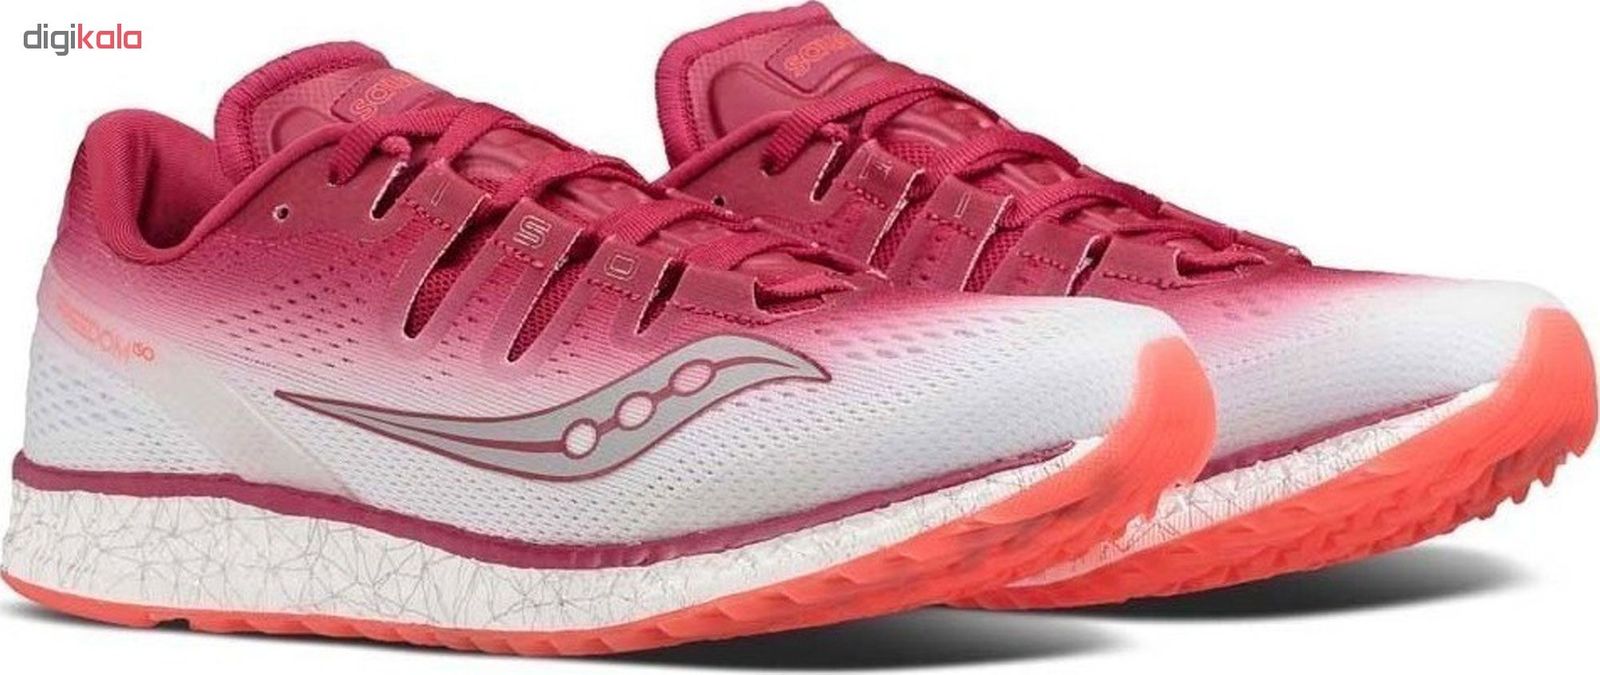 کفش مخصوص دویدن زنانه ساکنی مدل Freedom Iso کد S10355-5 -  - 3